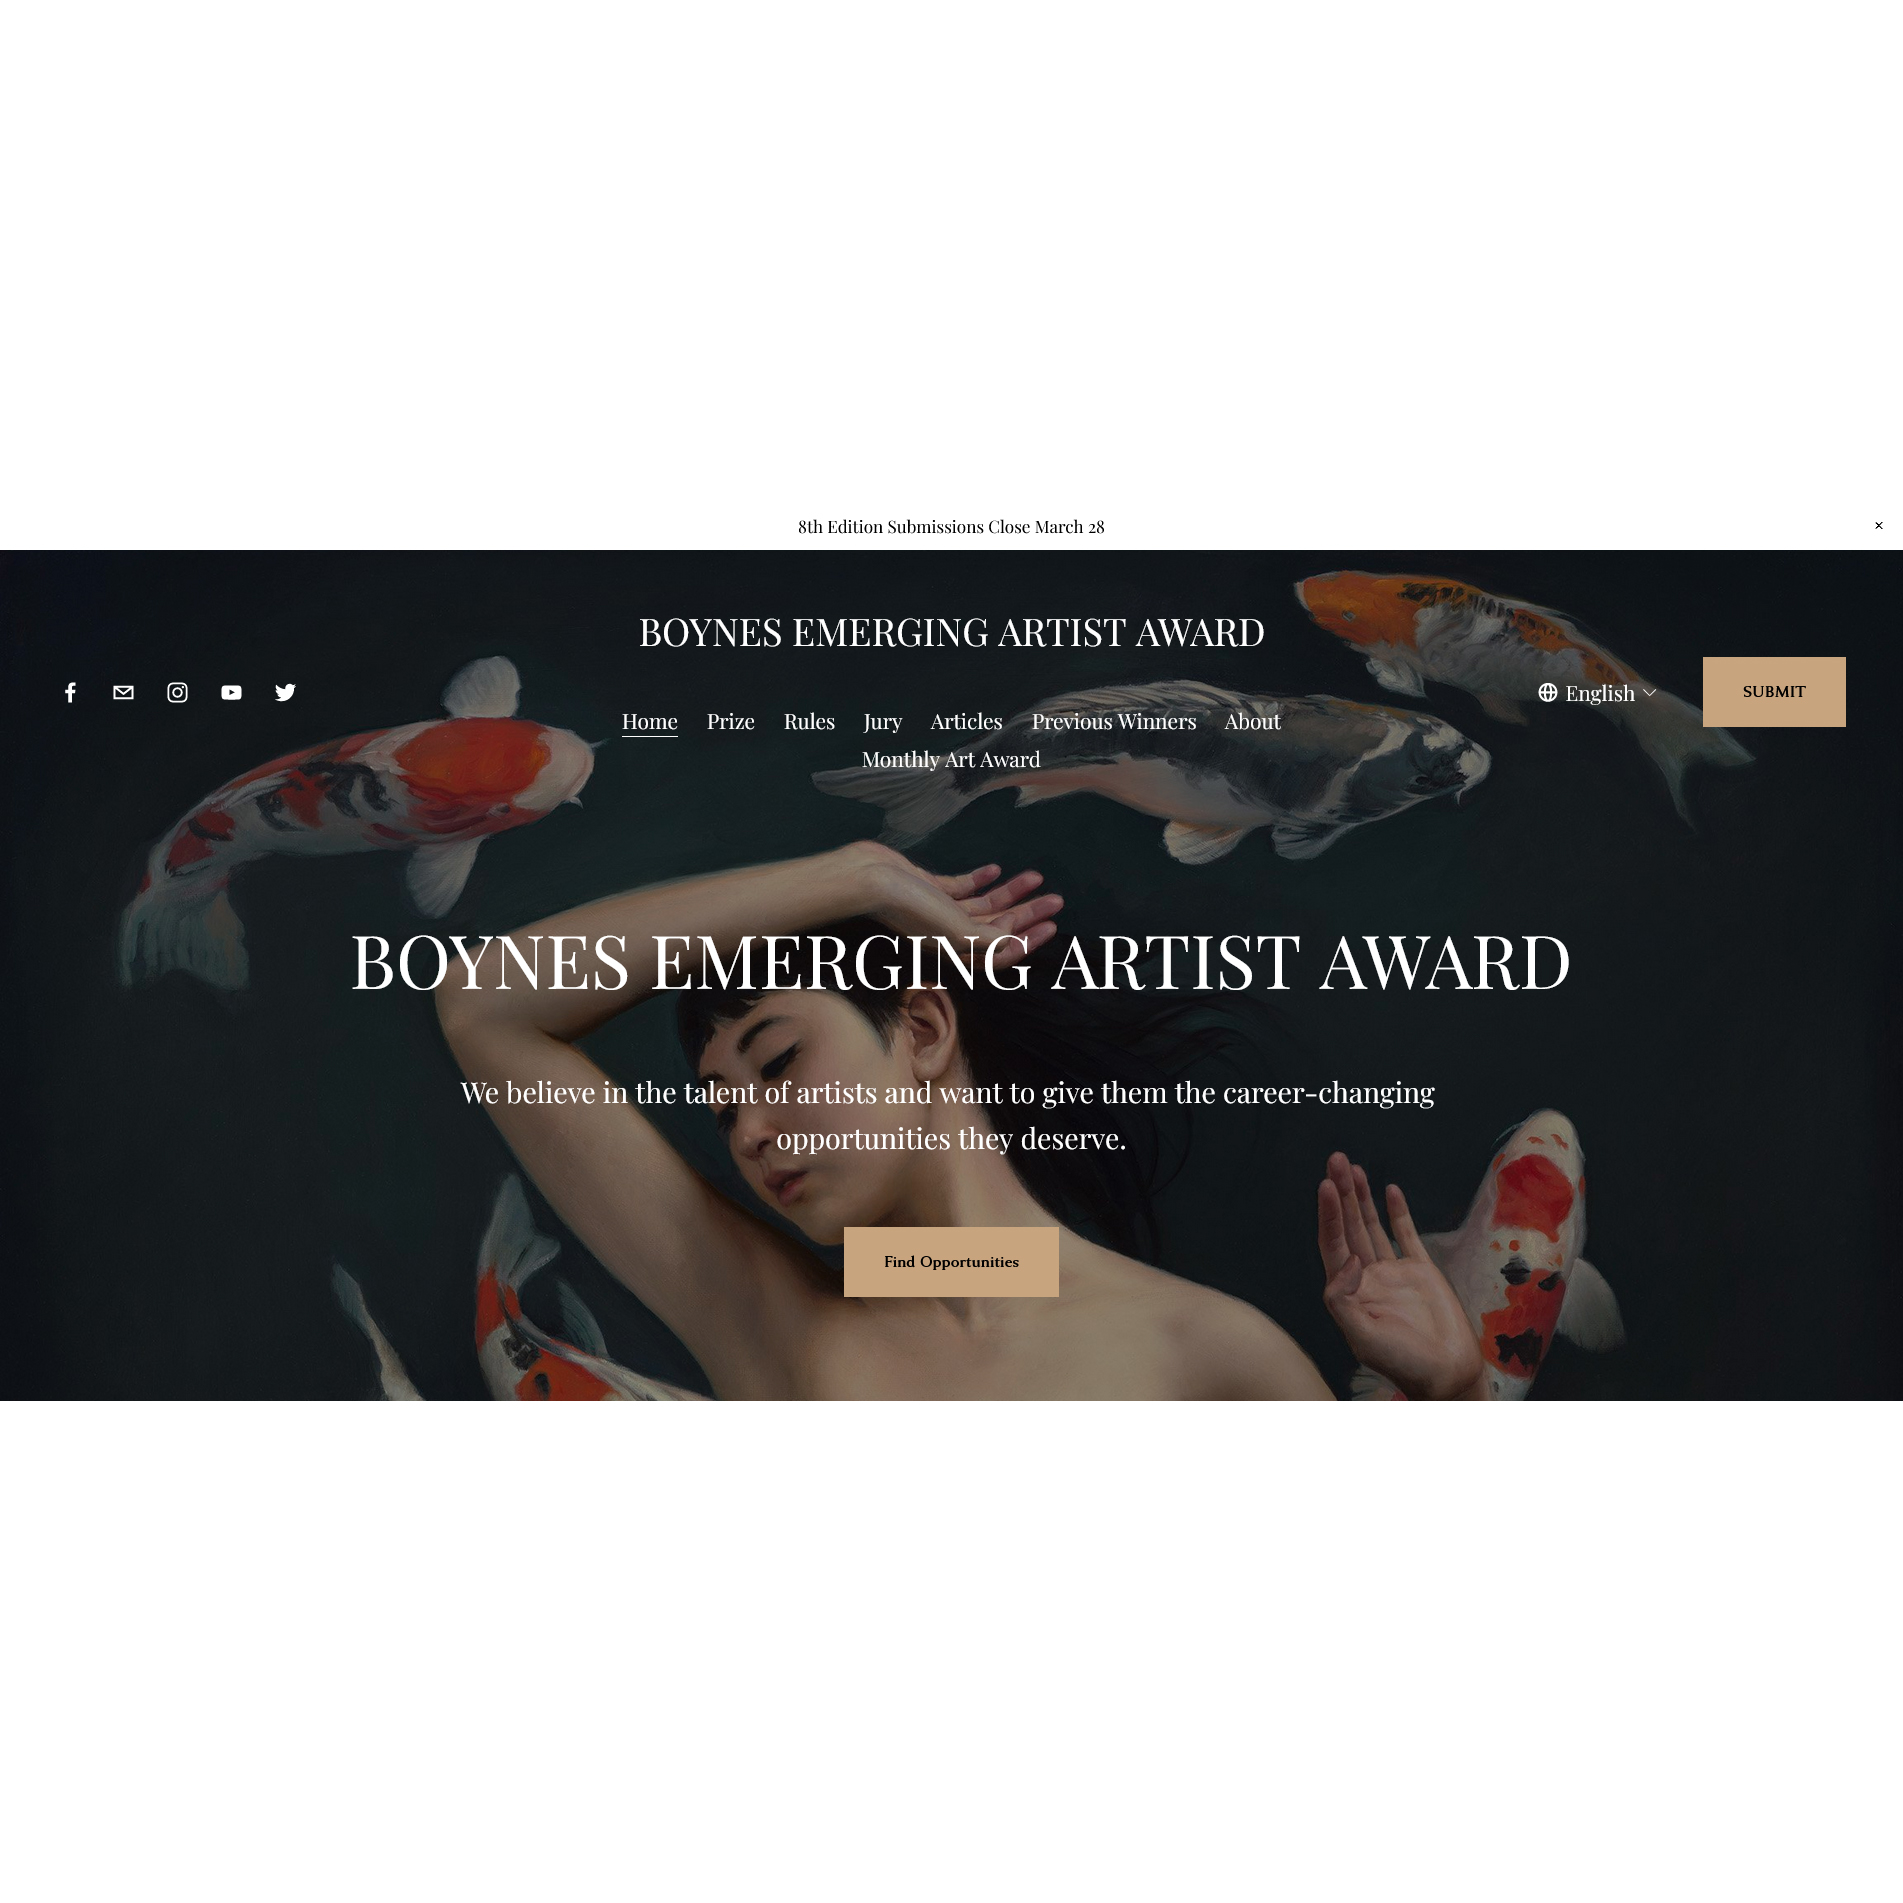 Boynes Emerging Artist Award 8th Edition